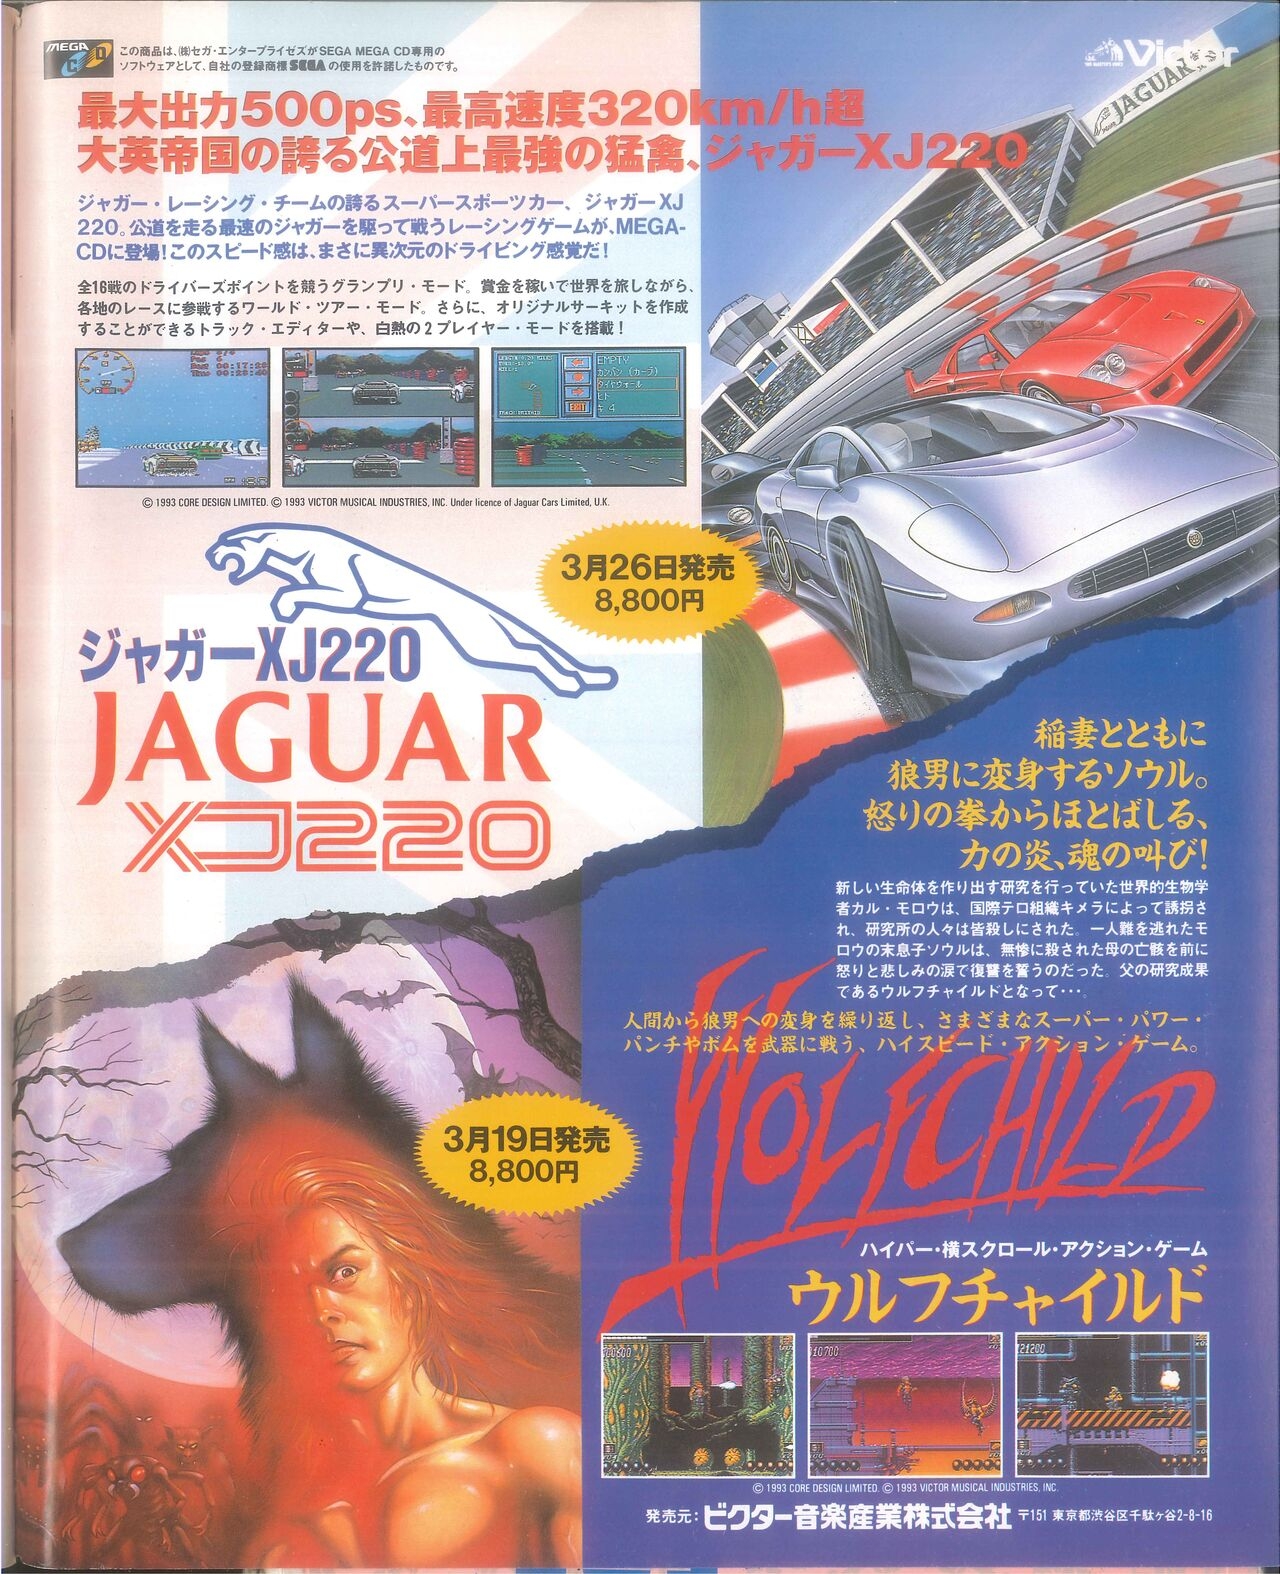 Dengeki Mega Drive Vol.2 (Sega Genesis) (April 1993) 76